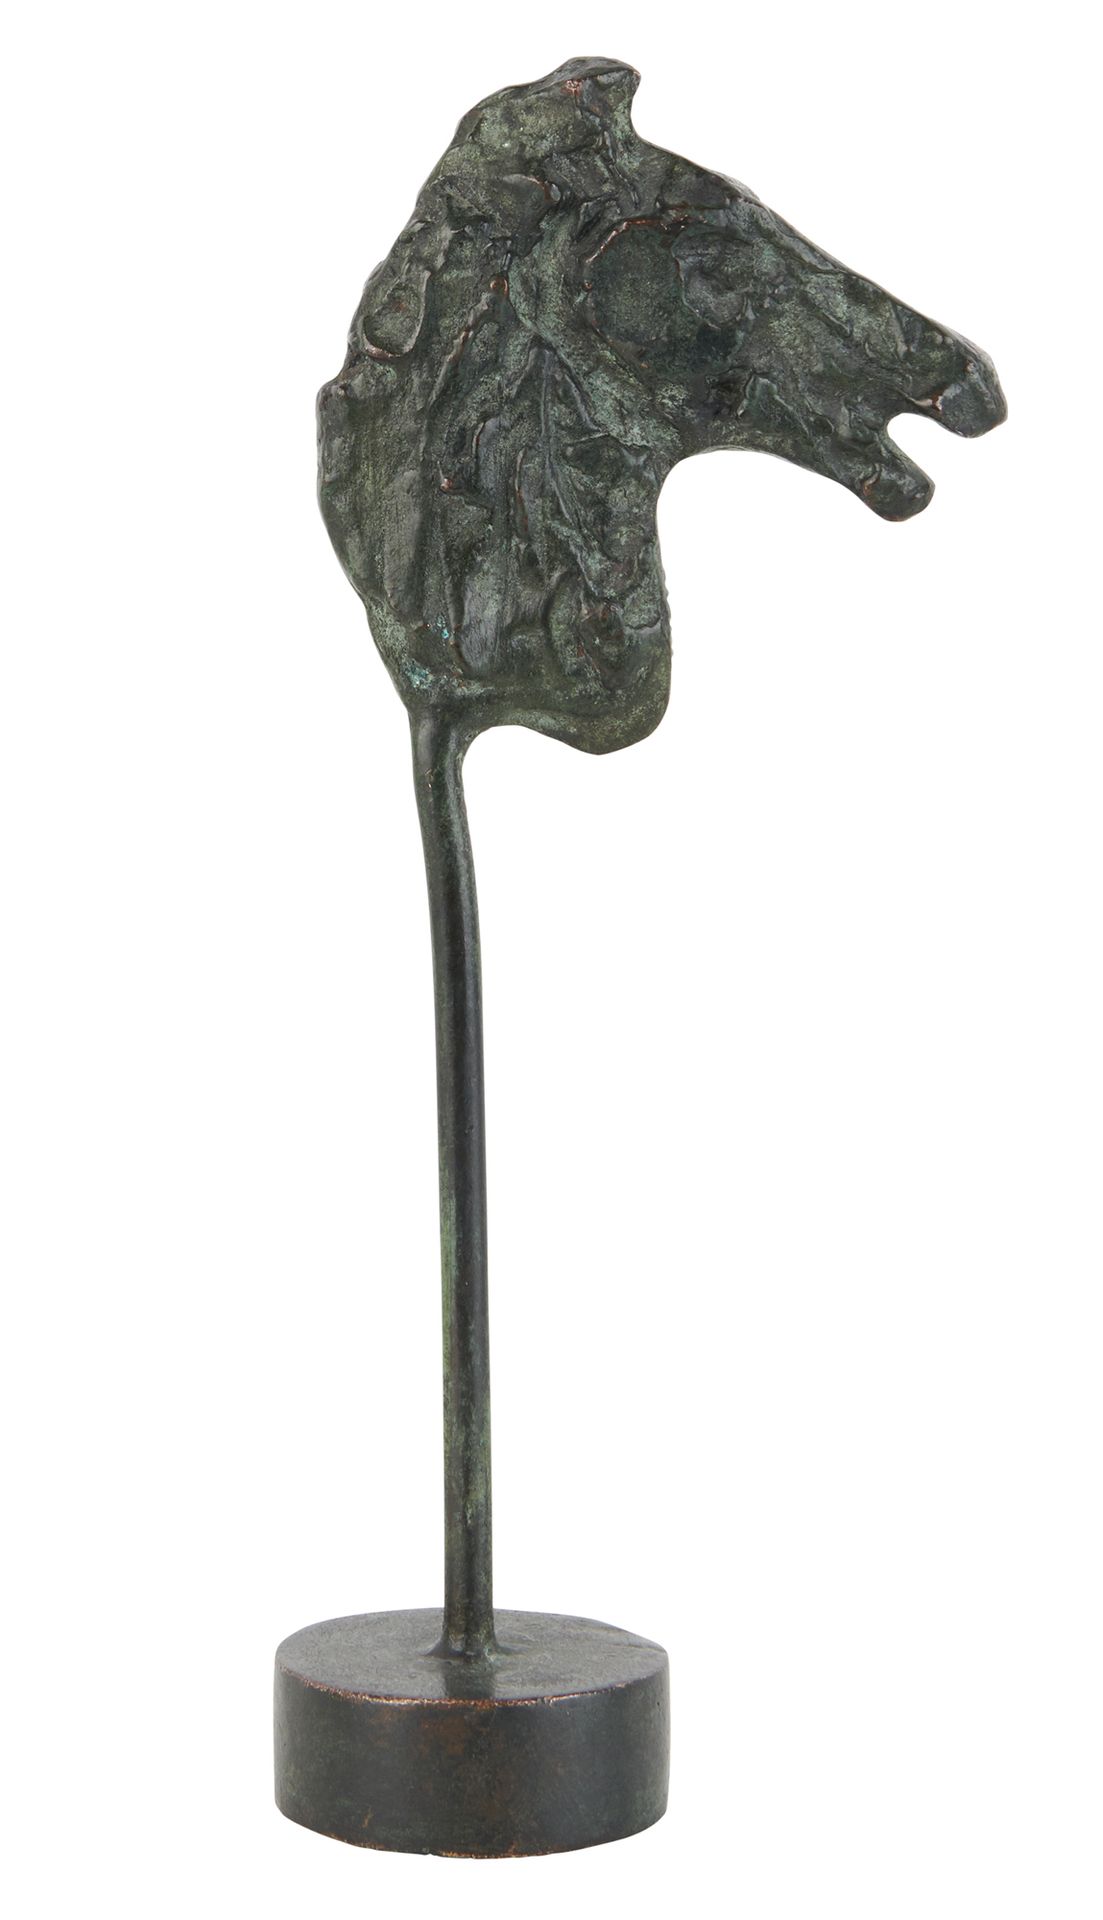 Diego GIACOMETTI 1902-1985 马头，约 1965 年
青铜质地，带古绿色铜锈，根据艺术家的原始石膏模型制作
颈部下方有迭戈签名 
高度：&hellip;